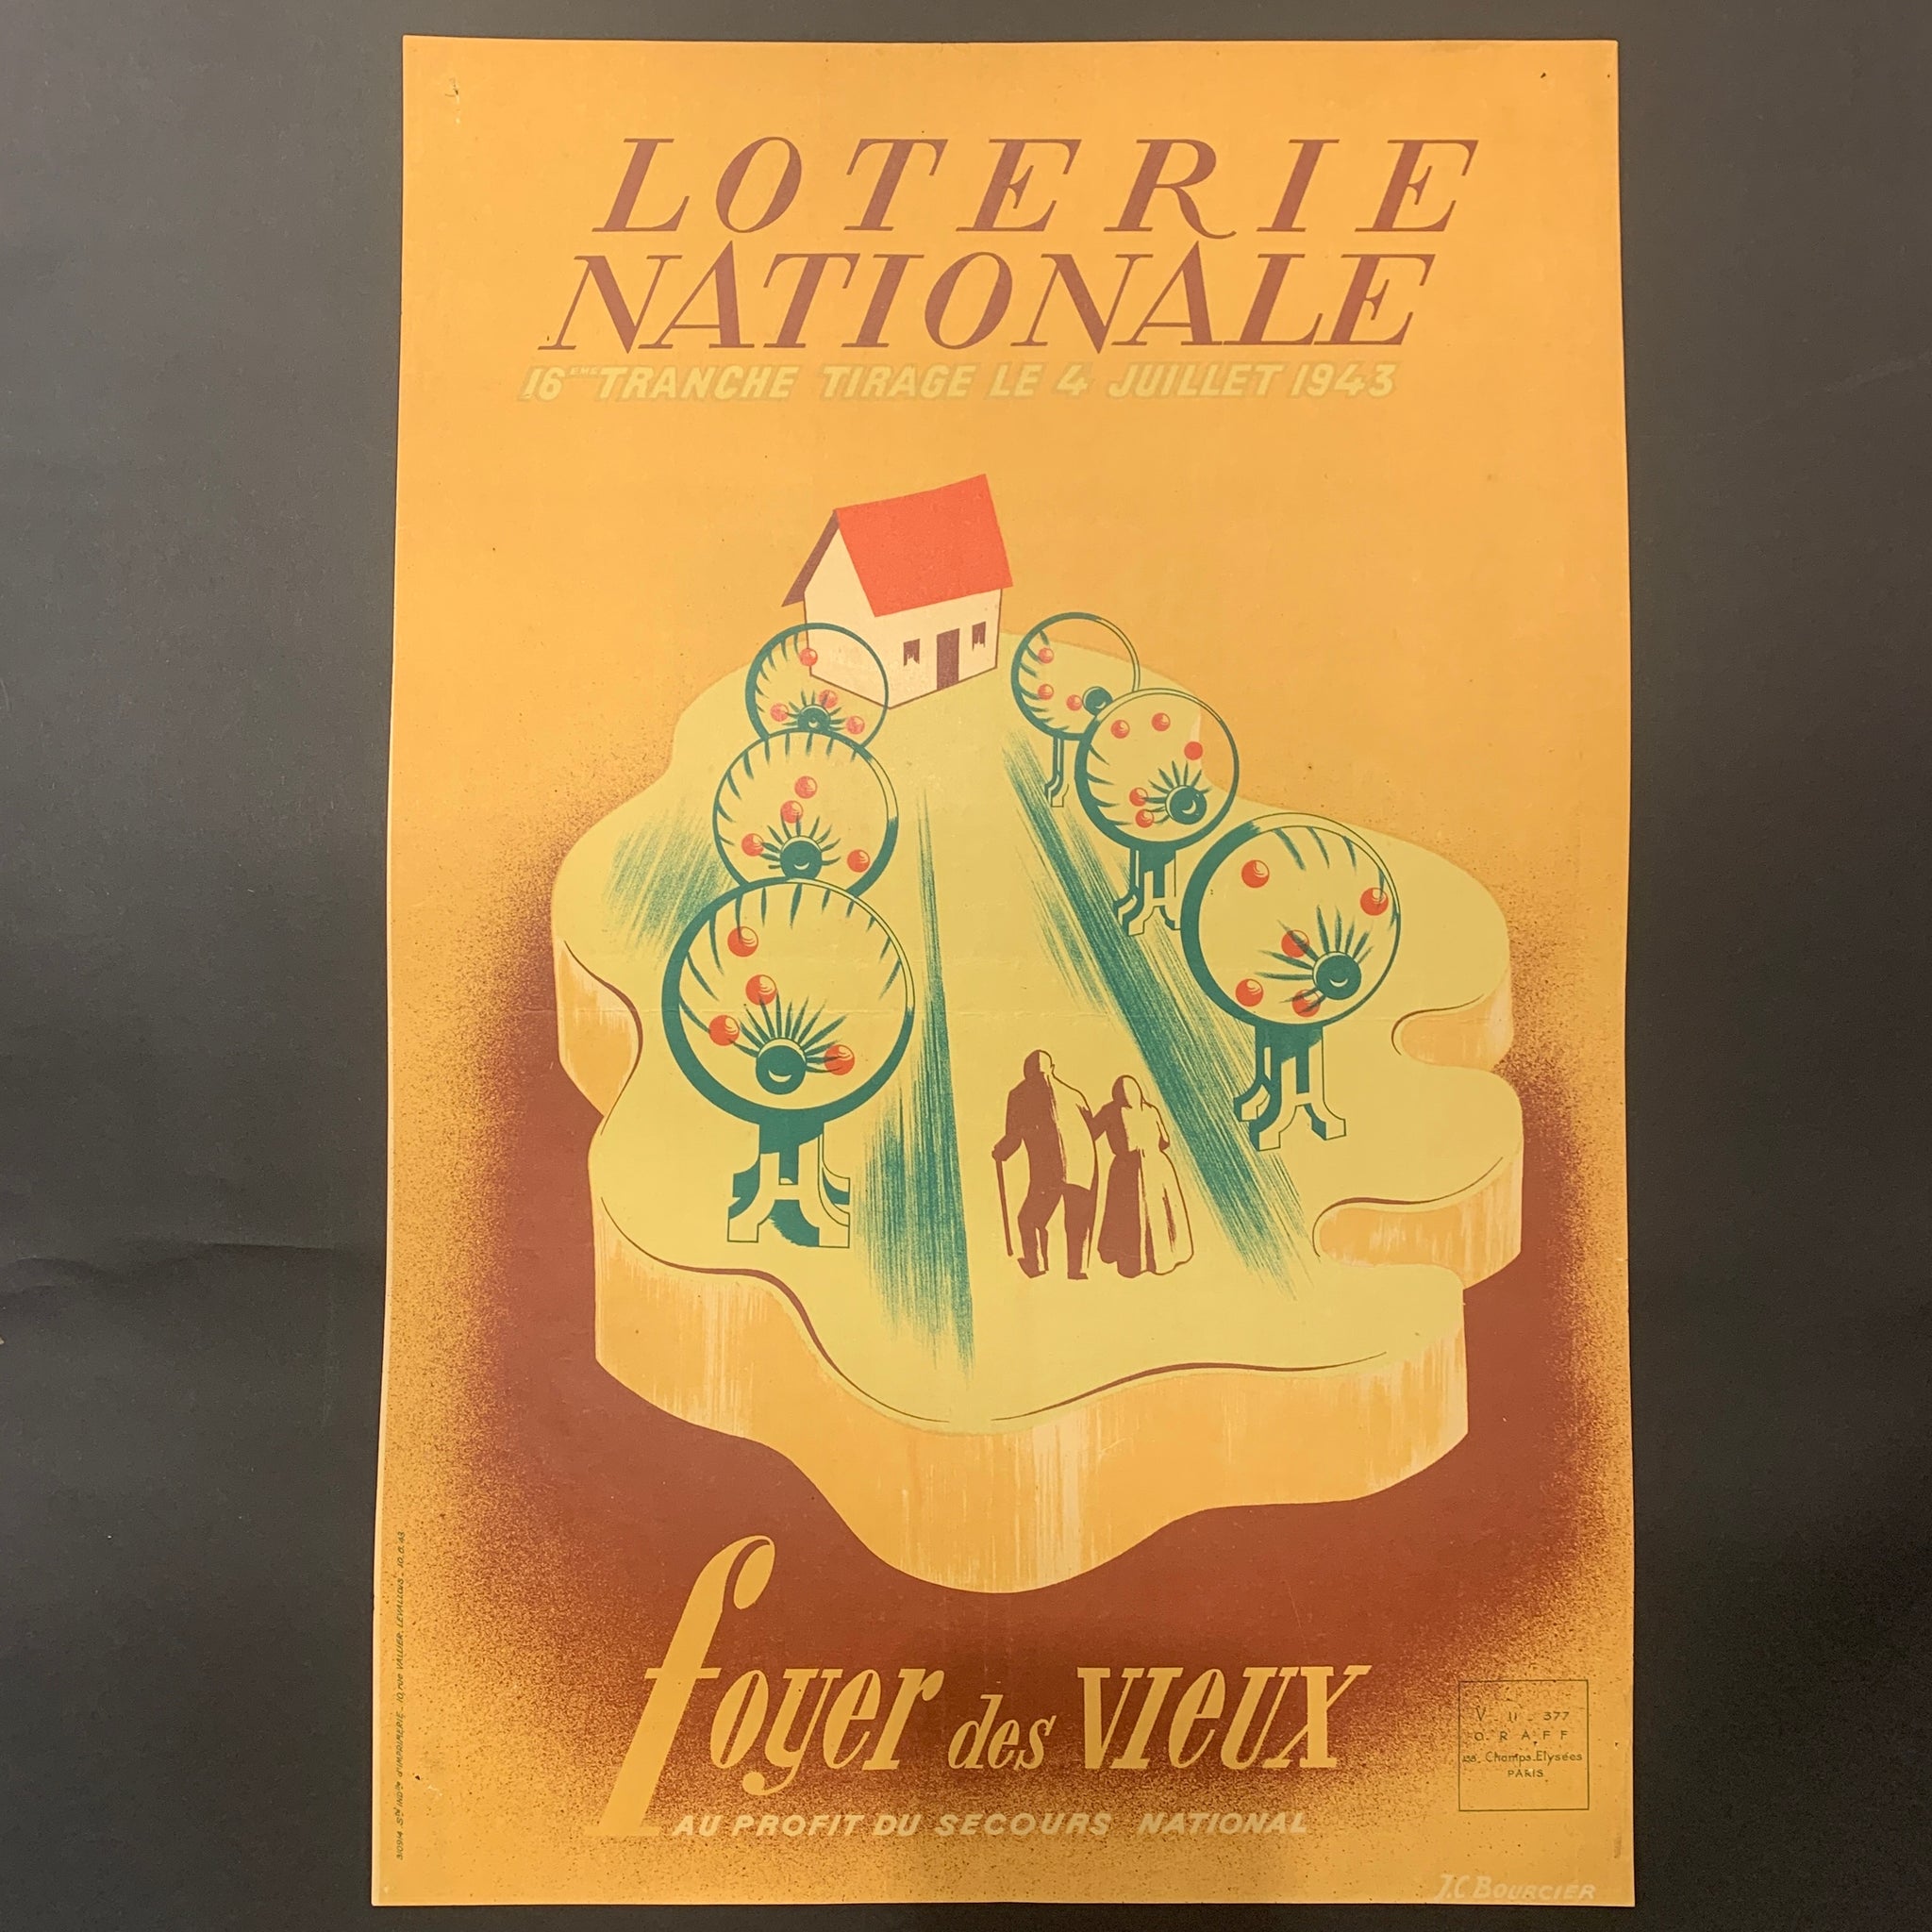 Fransk J.C.Bourcier “Loterie Nationale”plakat, fra 1943.